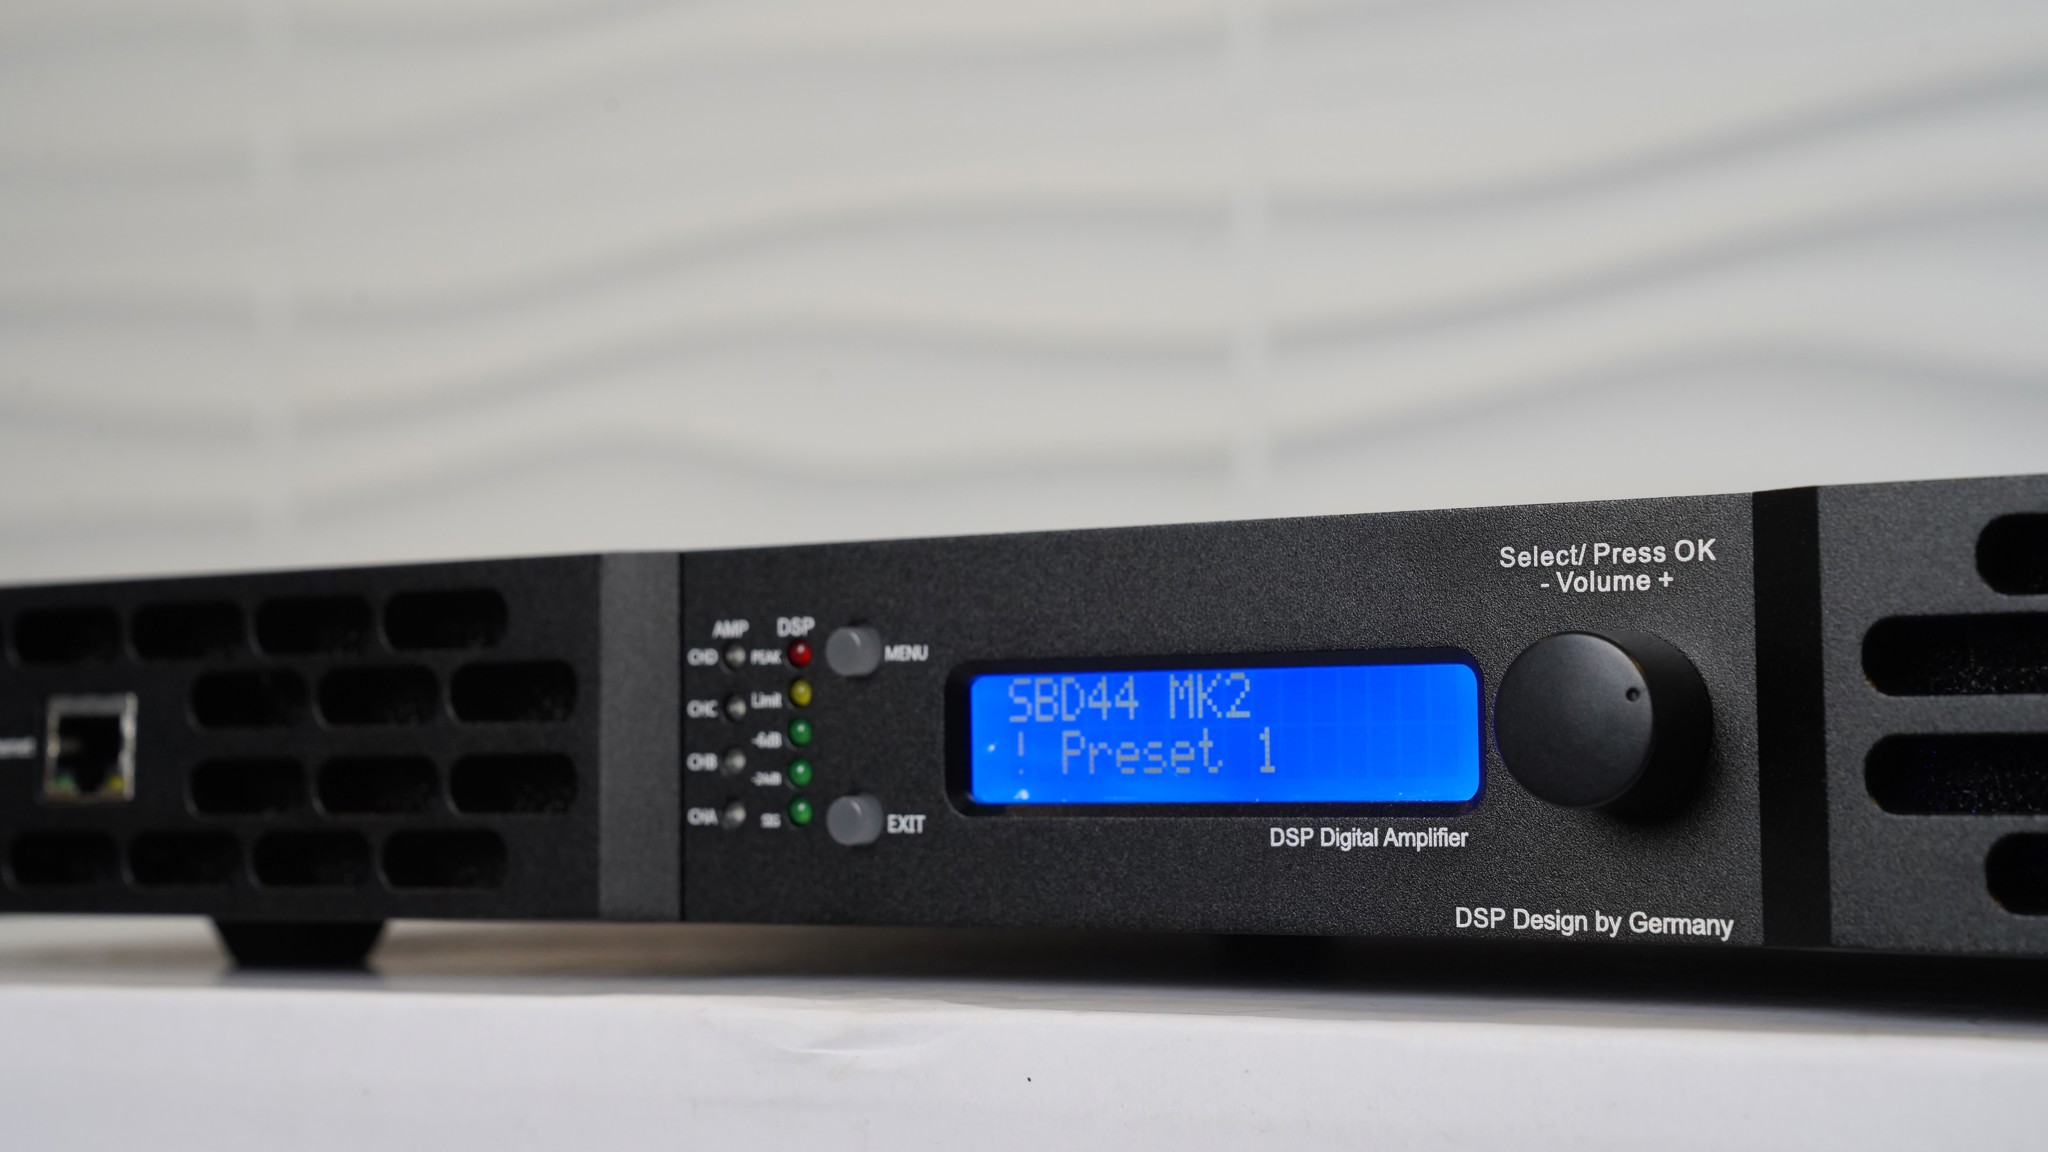 Amplifier&DSP 4 kênh ClassD Techsound XD-1300